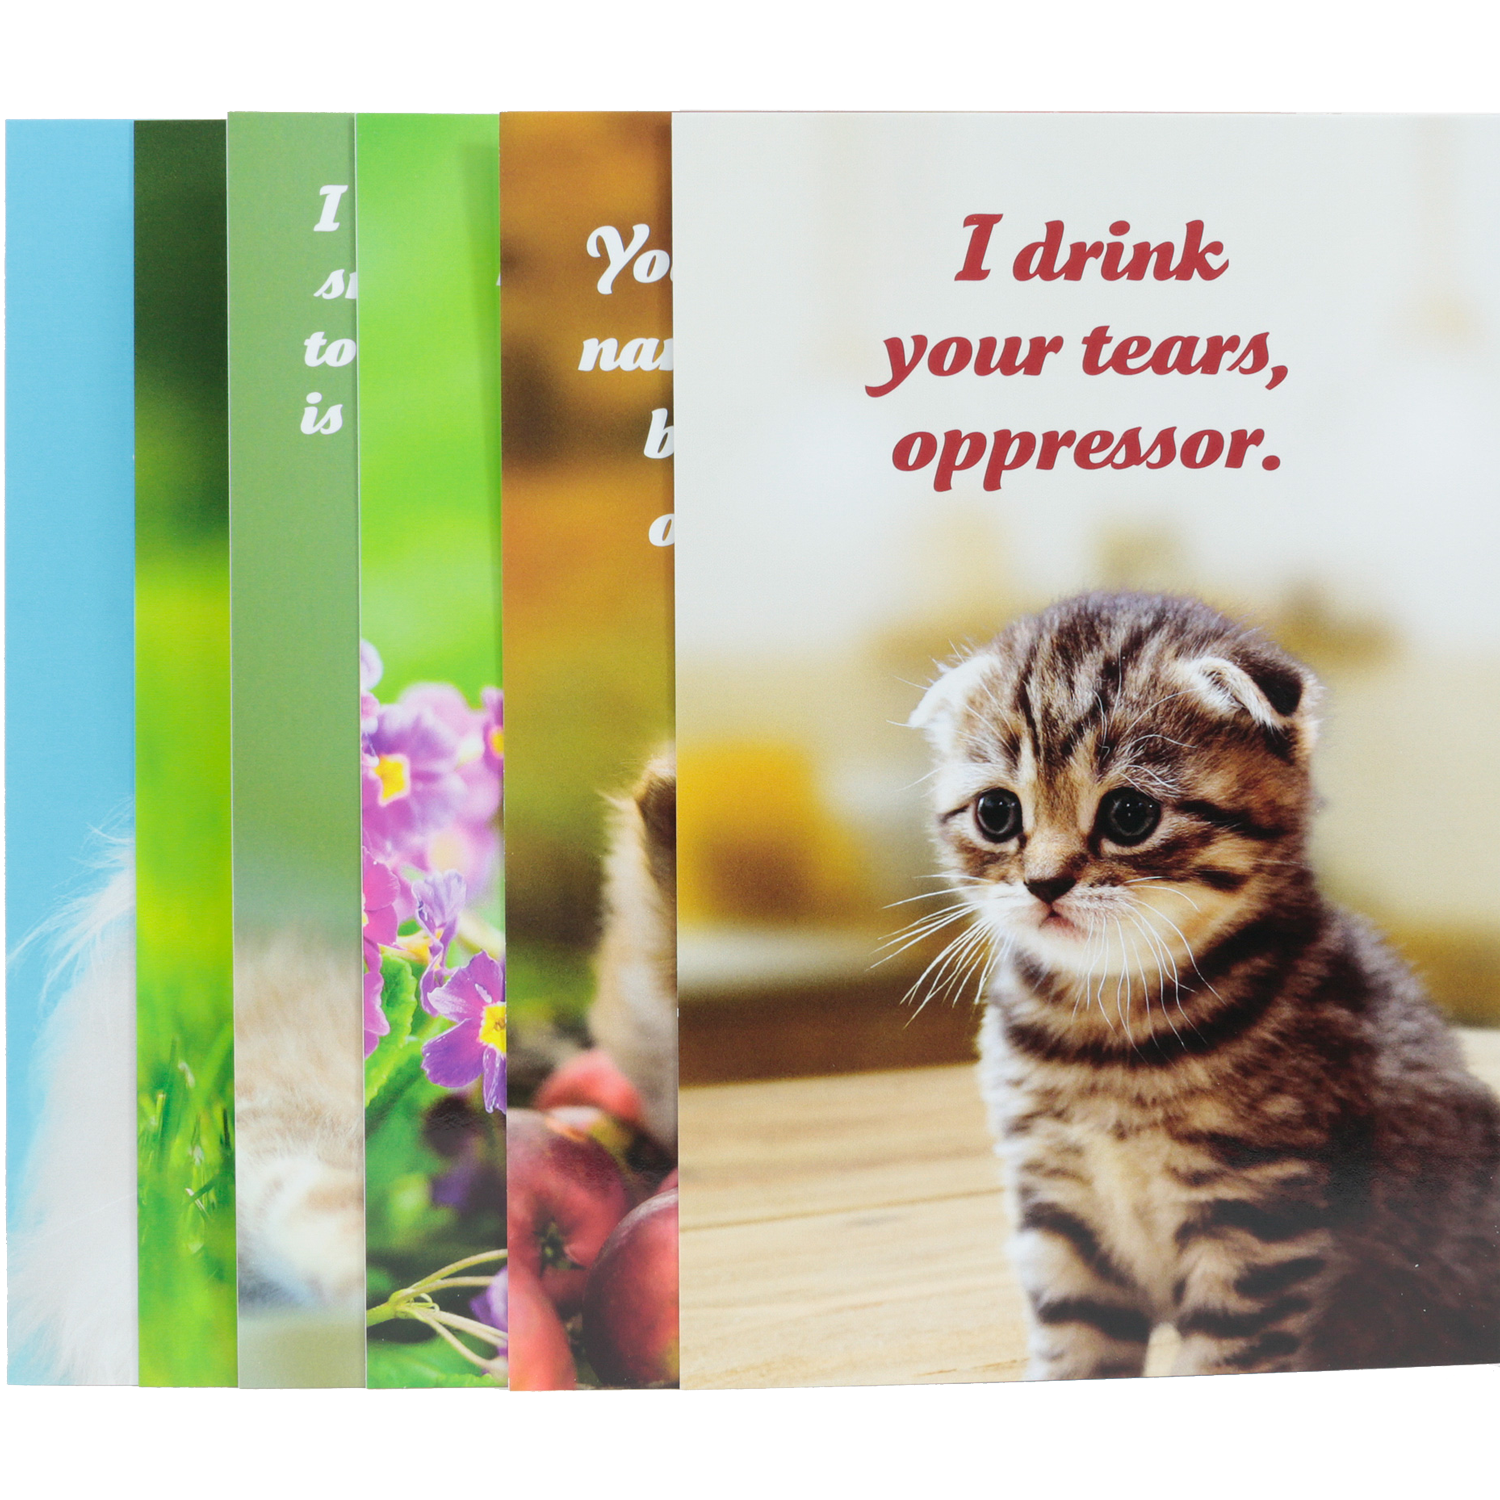 Social Justice Kittens Vol. I